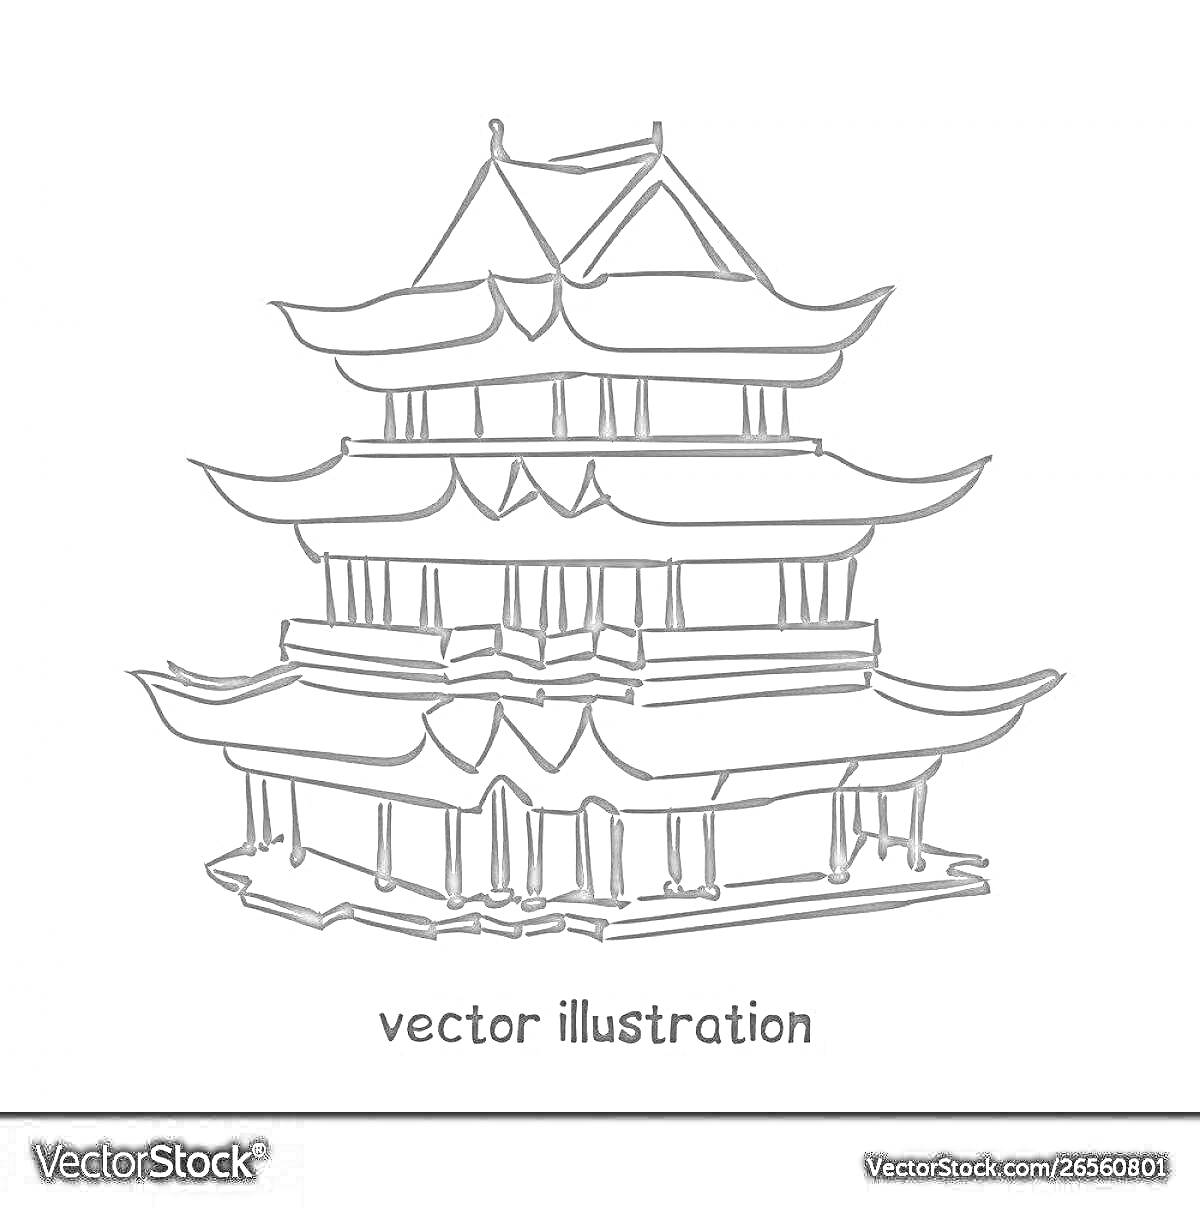 Раскраска Пагода — многоуровневое здание с декоративными крышами и колоннами